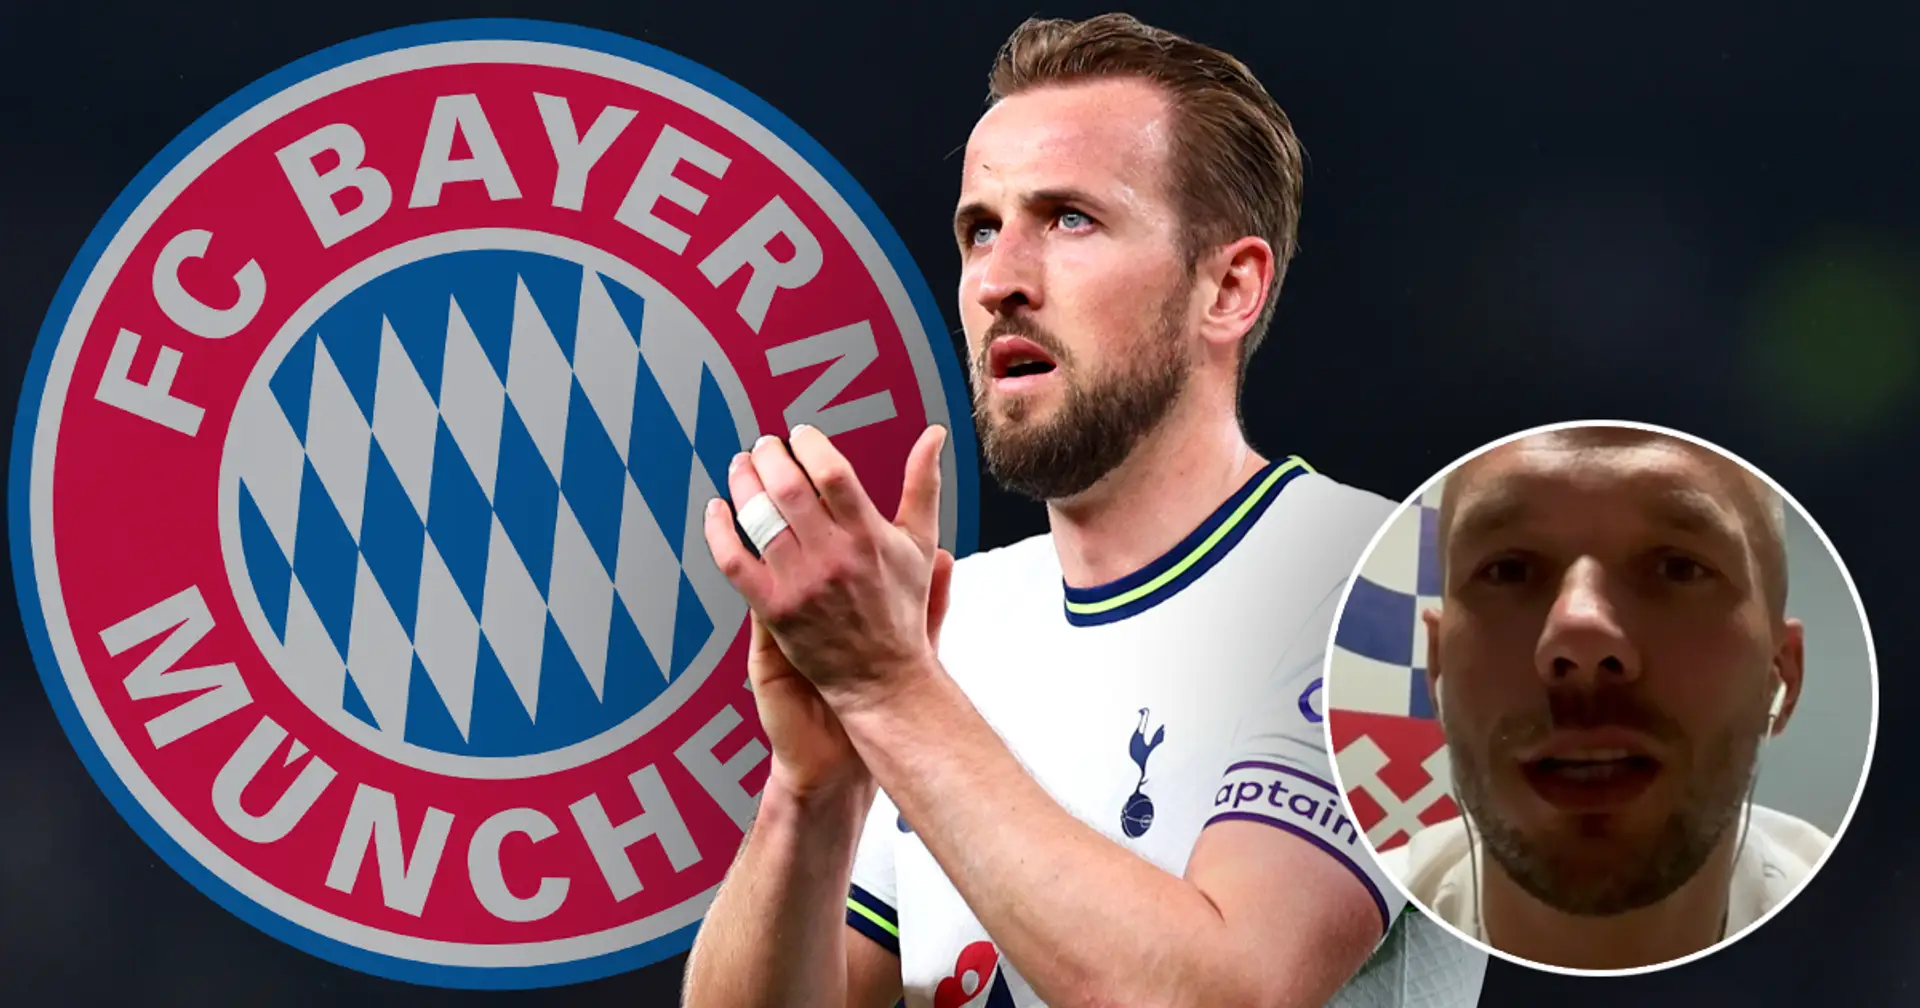 "Seine letzte Chance, um noch etwas zu probieren": Lukas Podolski rät Harry Kane zum Wechsel zu Bayern